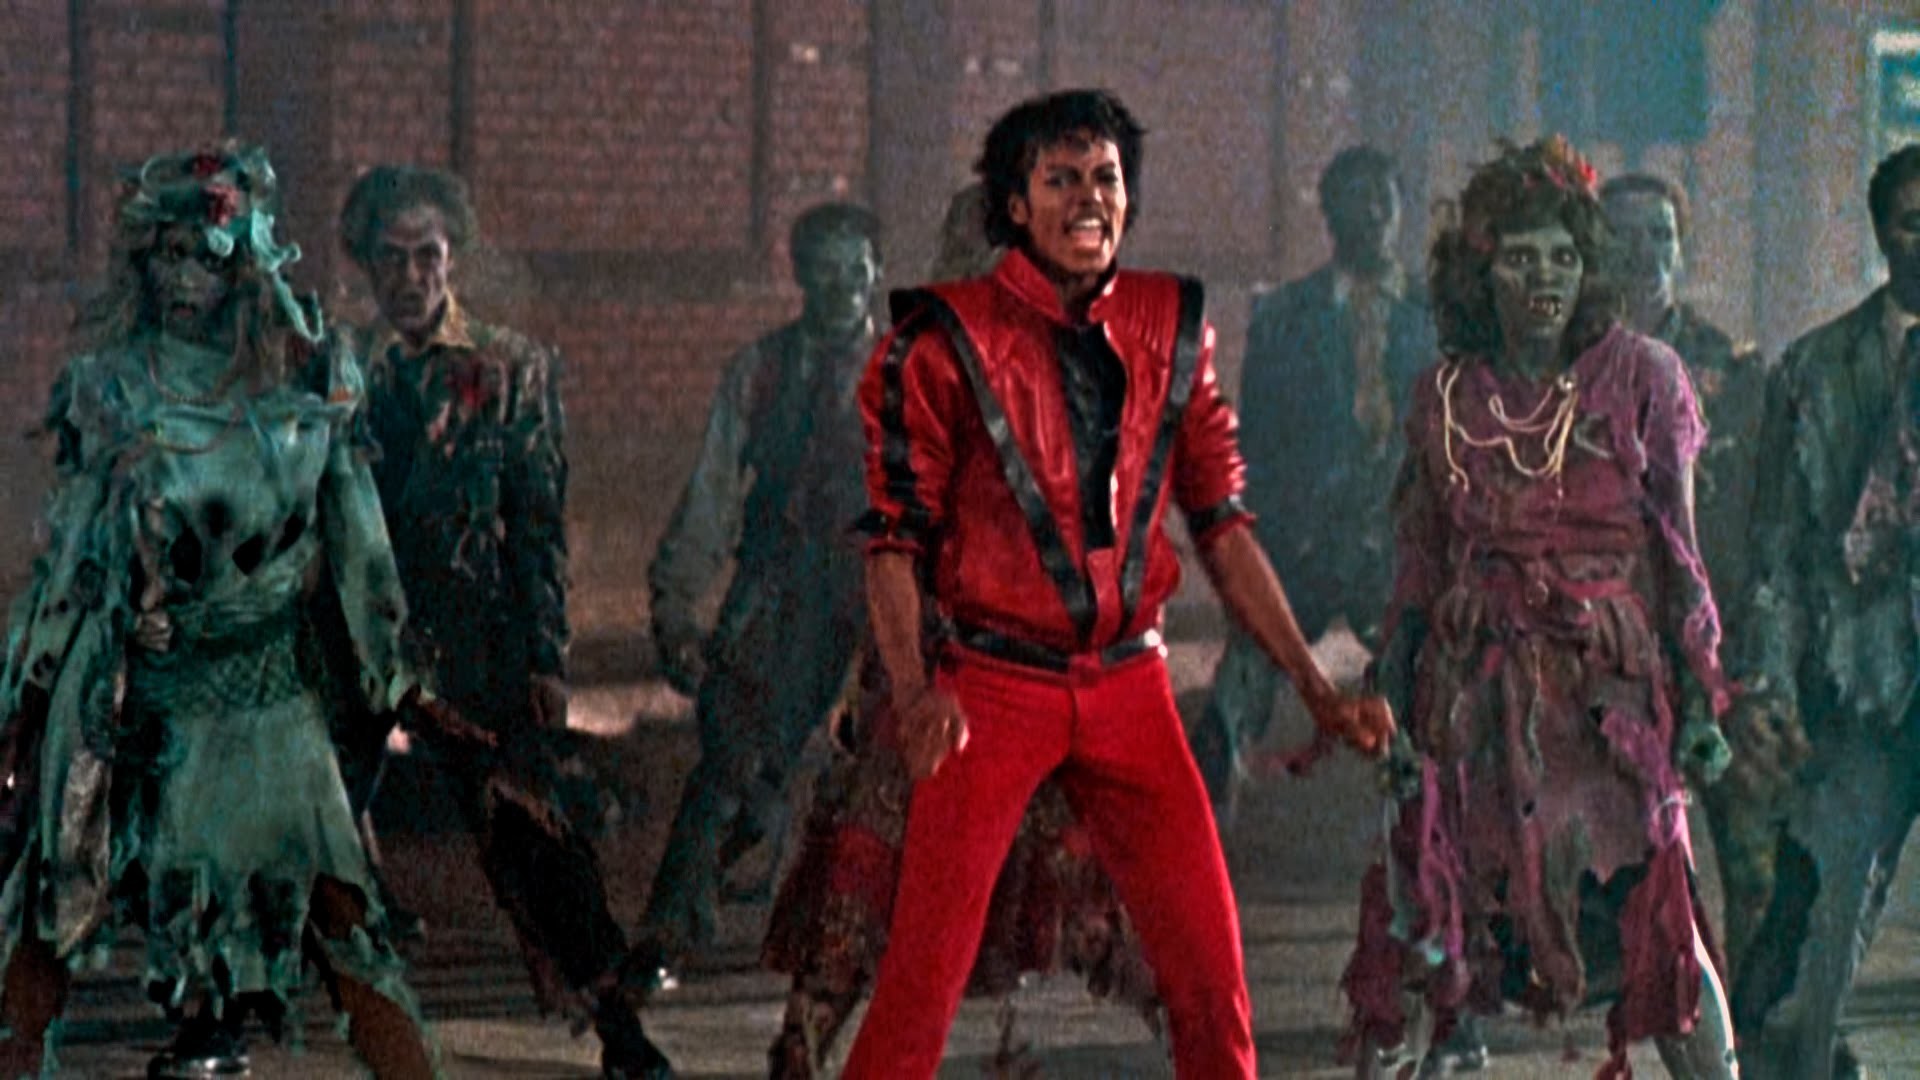 1920x1080 Jackson's "Thriller" ...